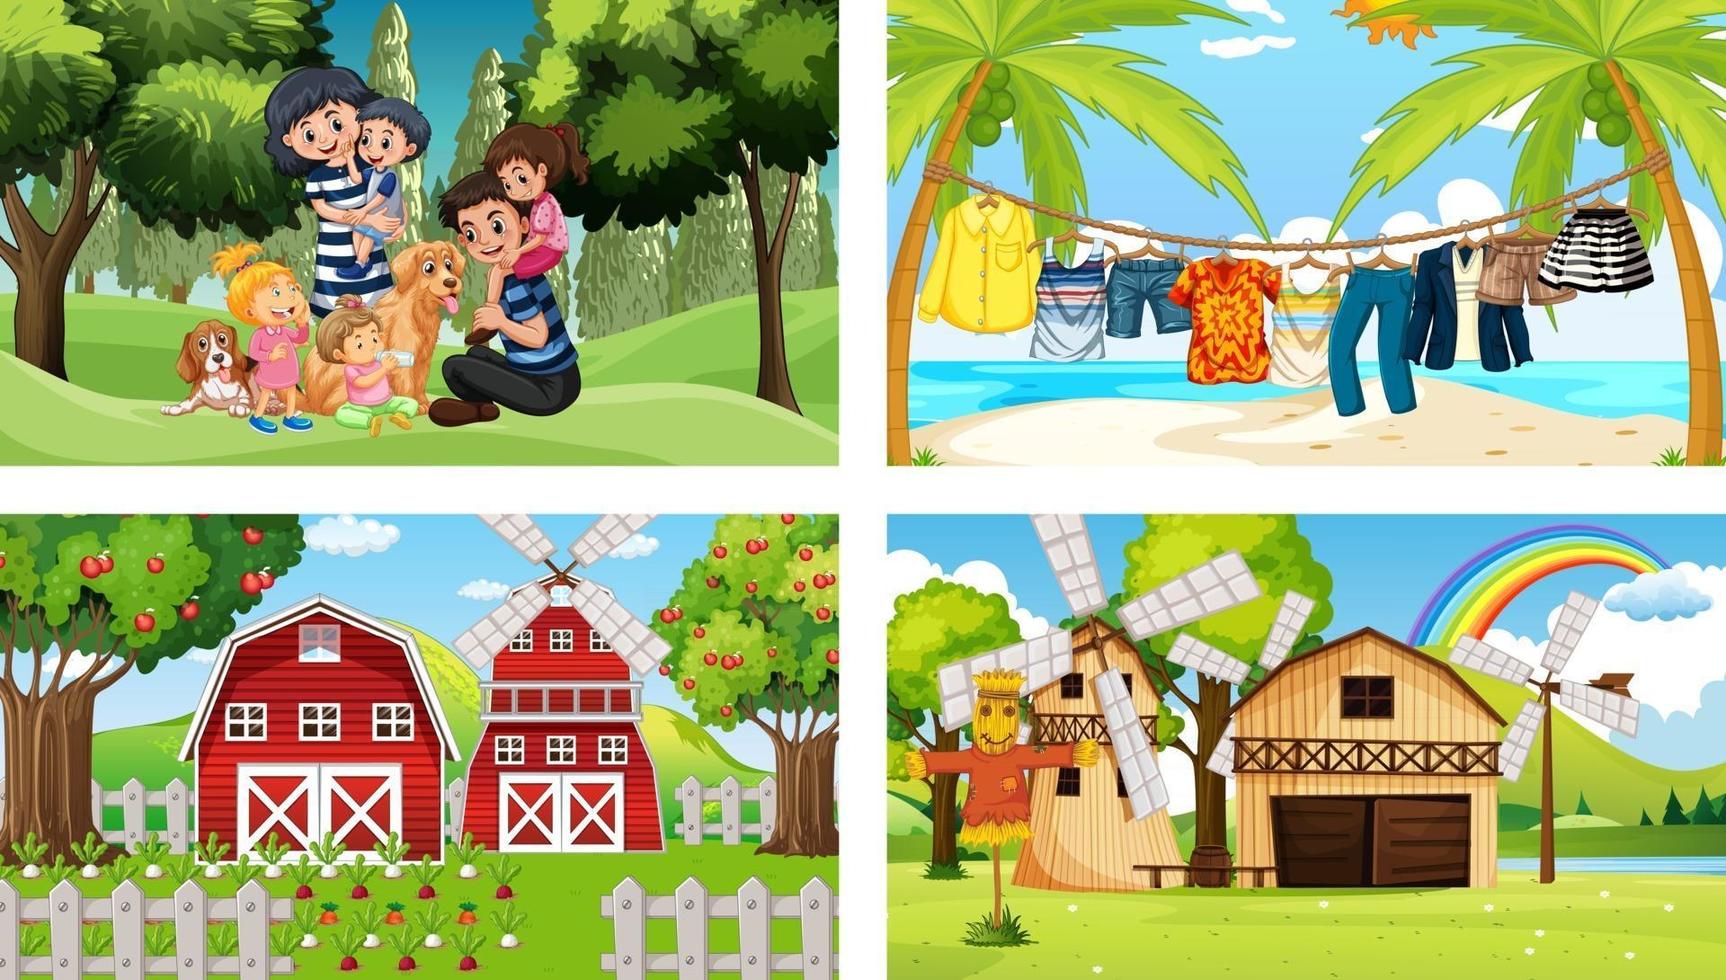 quattro diverse scene con il personaggio dei cartoni animati dei bambini vettore